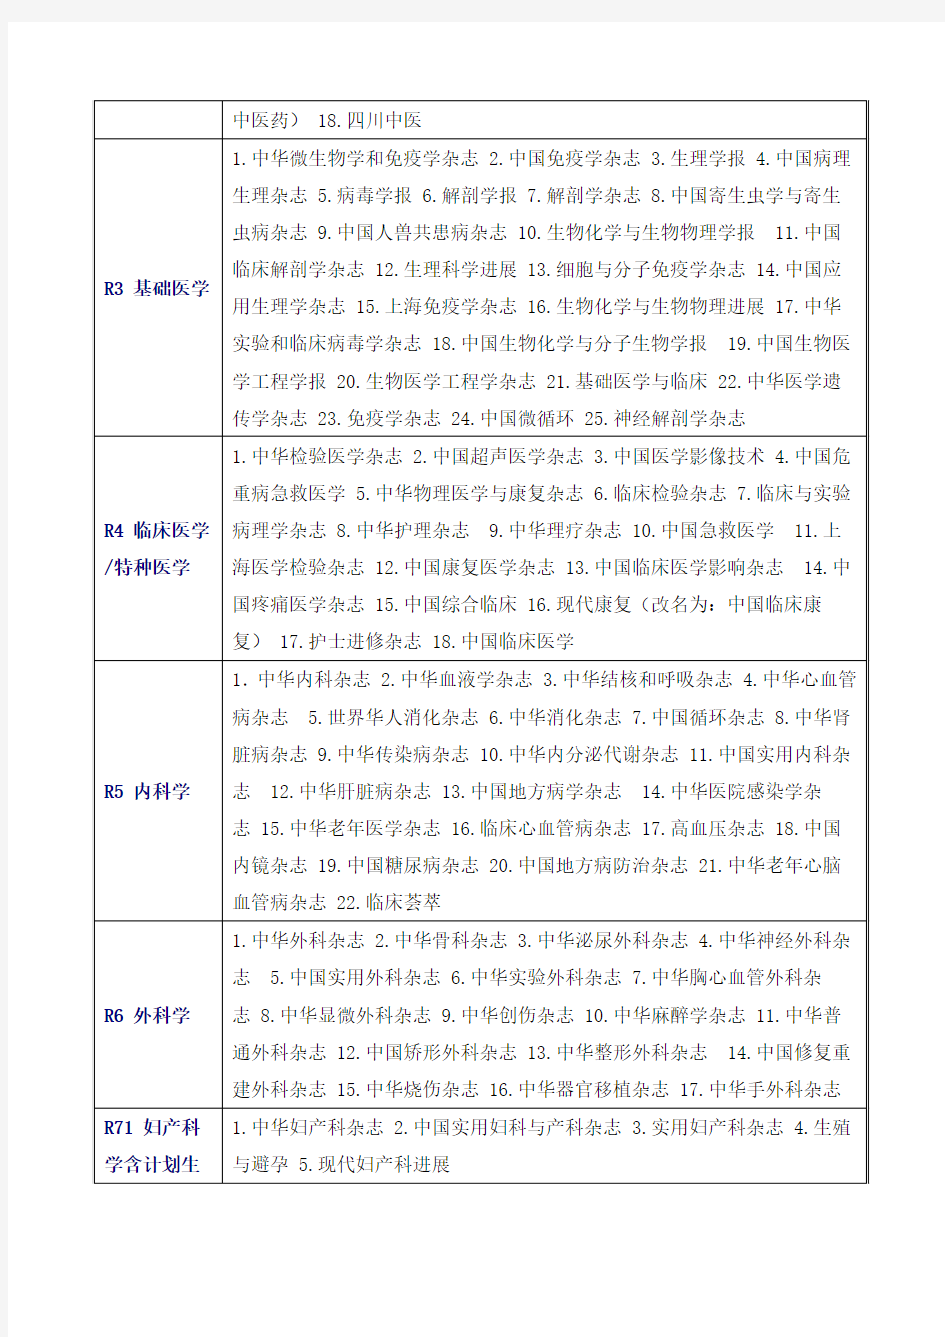 北大图书馆中文核心期刊目录(2004版)